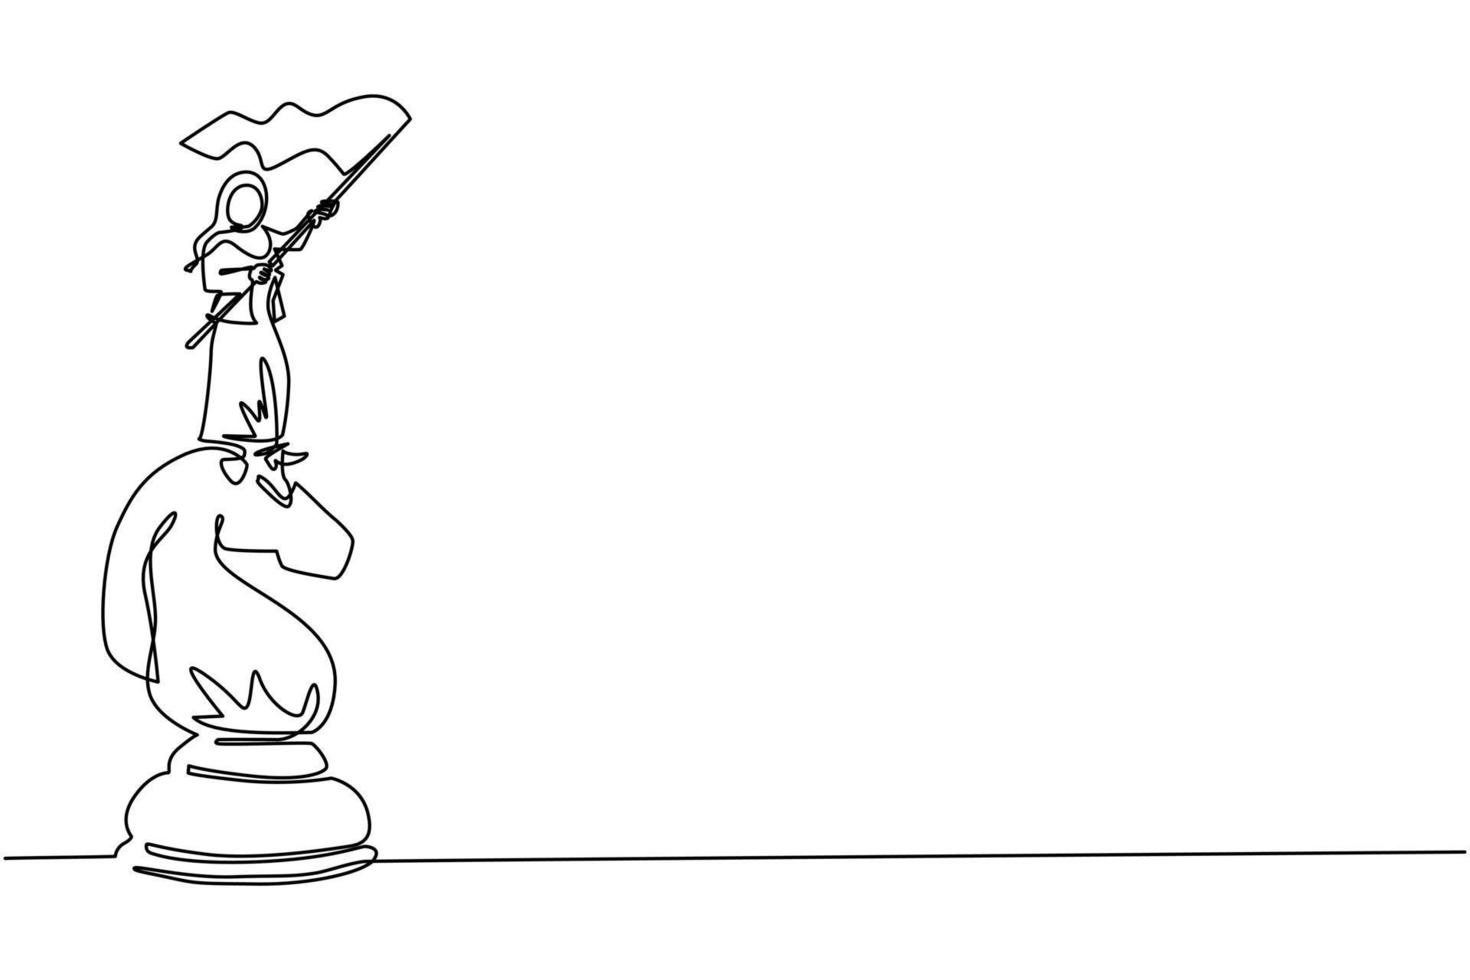 una línea continua dibujando a una mujer de negocios árabe parada encima de un gran caballo de ajedrez y ondeando una bandera. objetivo de logro empresarial, concepto de metáfora. ilustración de vector de diseño de dibujo de una sola línea